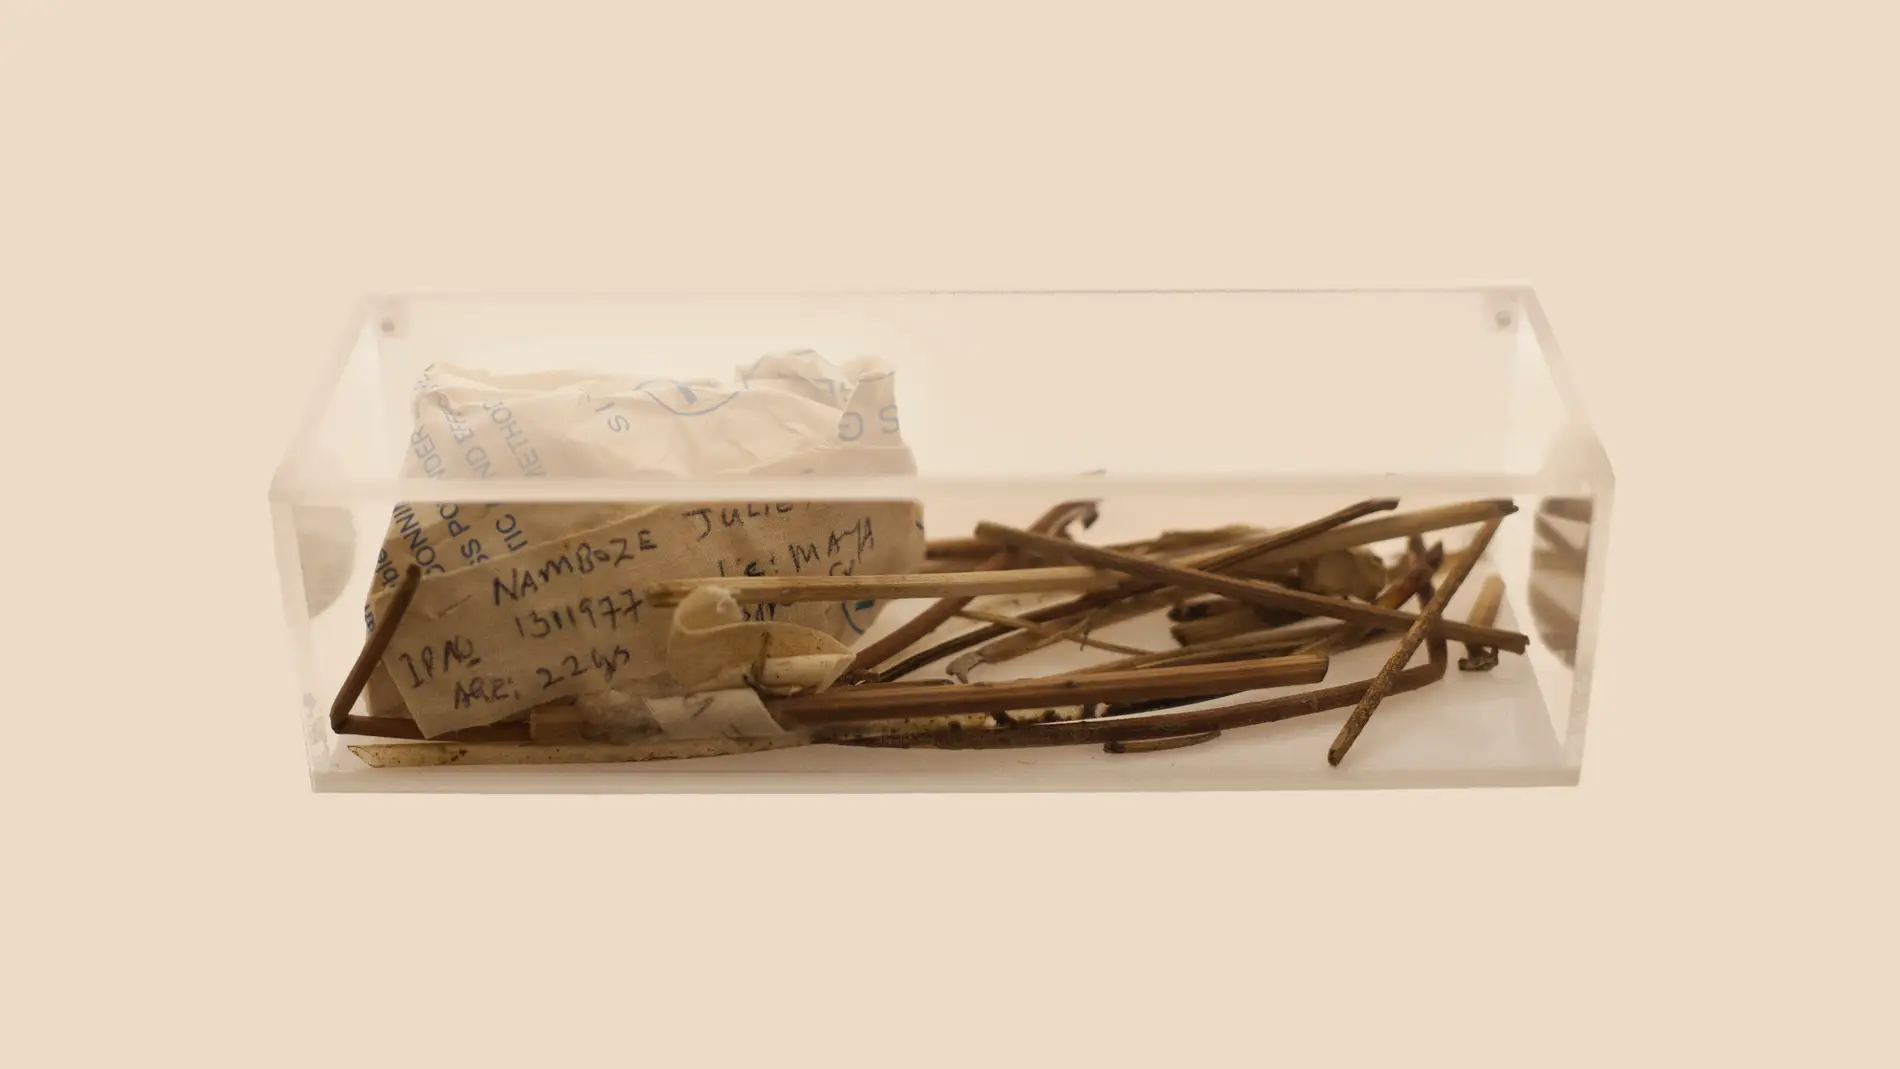 artefactos usados durante un aborto ilegal en Uganda 2002